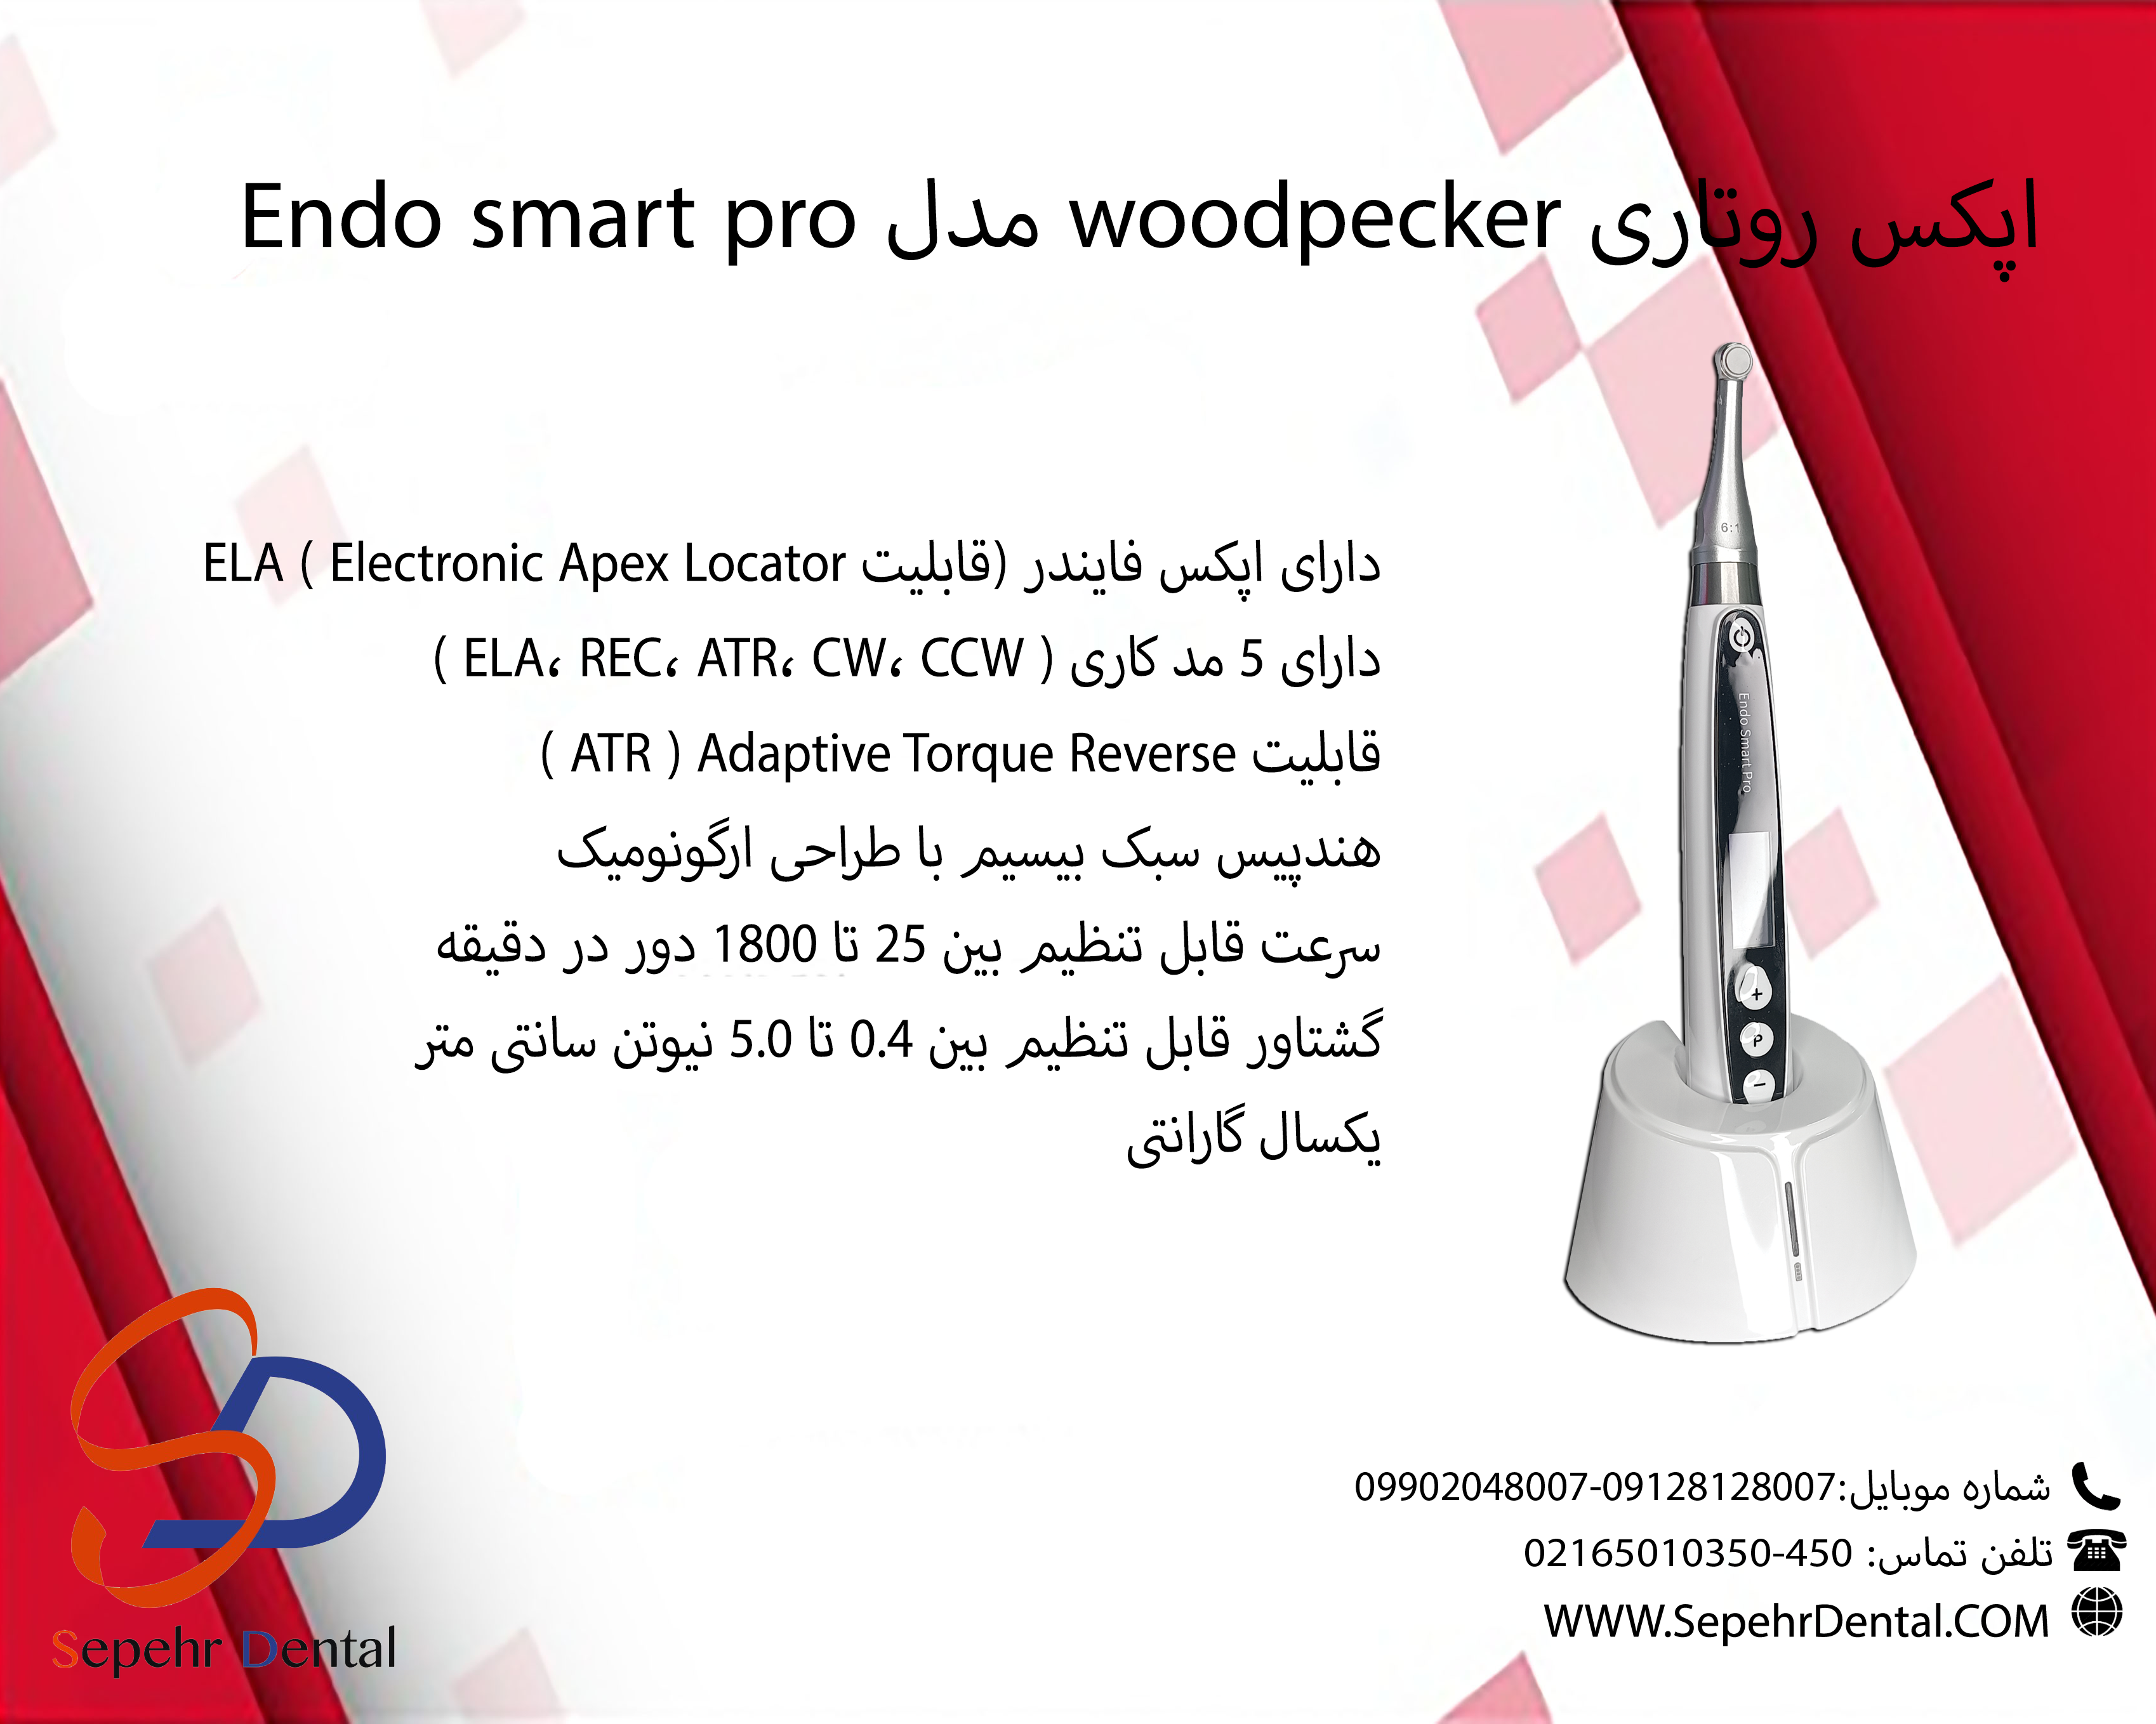 اپکس روتاری Woodpecker مدل Endo Smart Pro